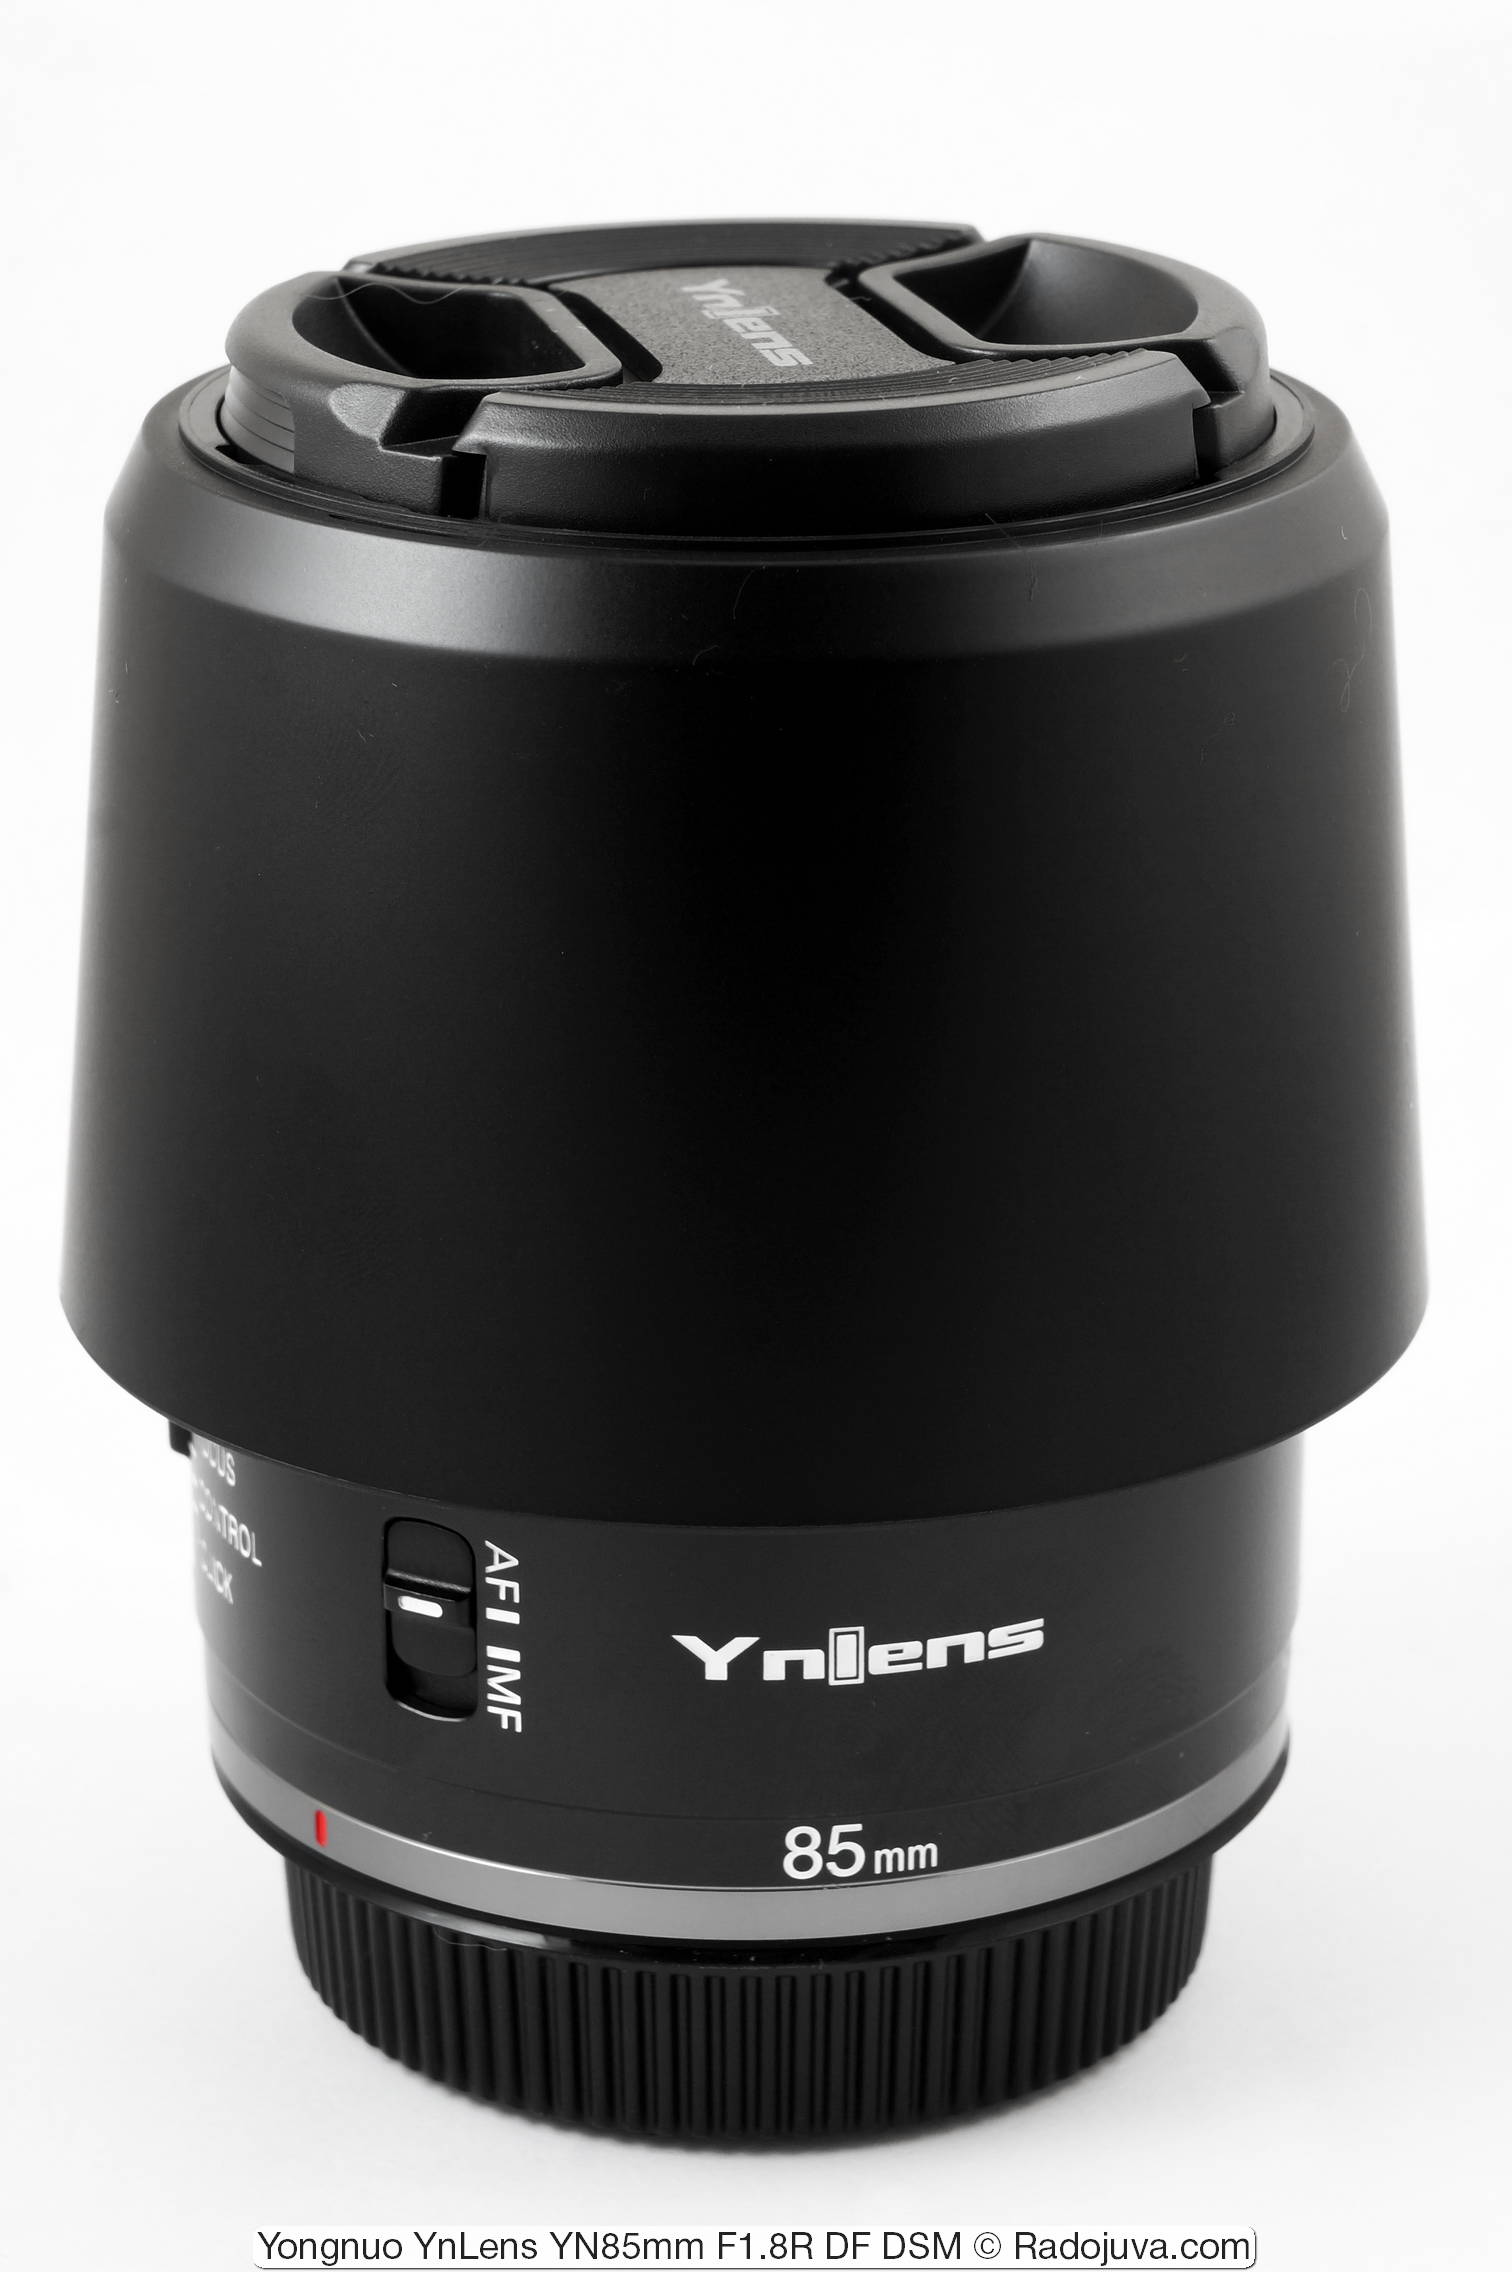 Yongnuo YnLens YN85mm F1.8R DF DSM (para Canon RF)